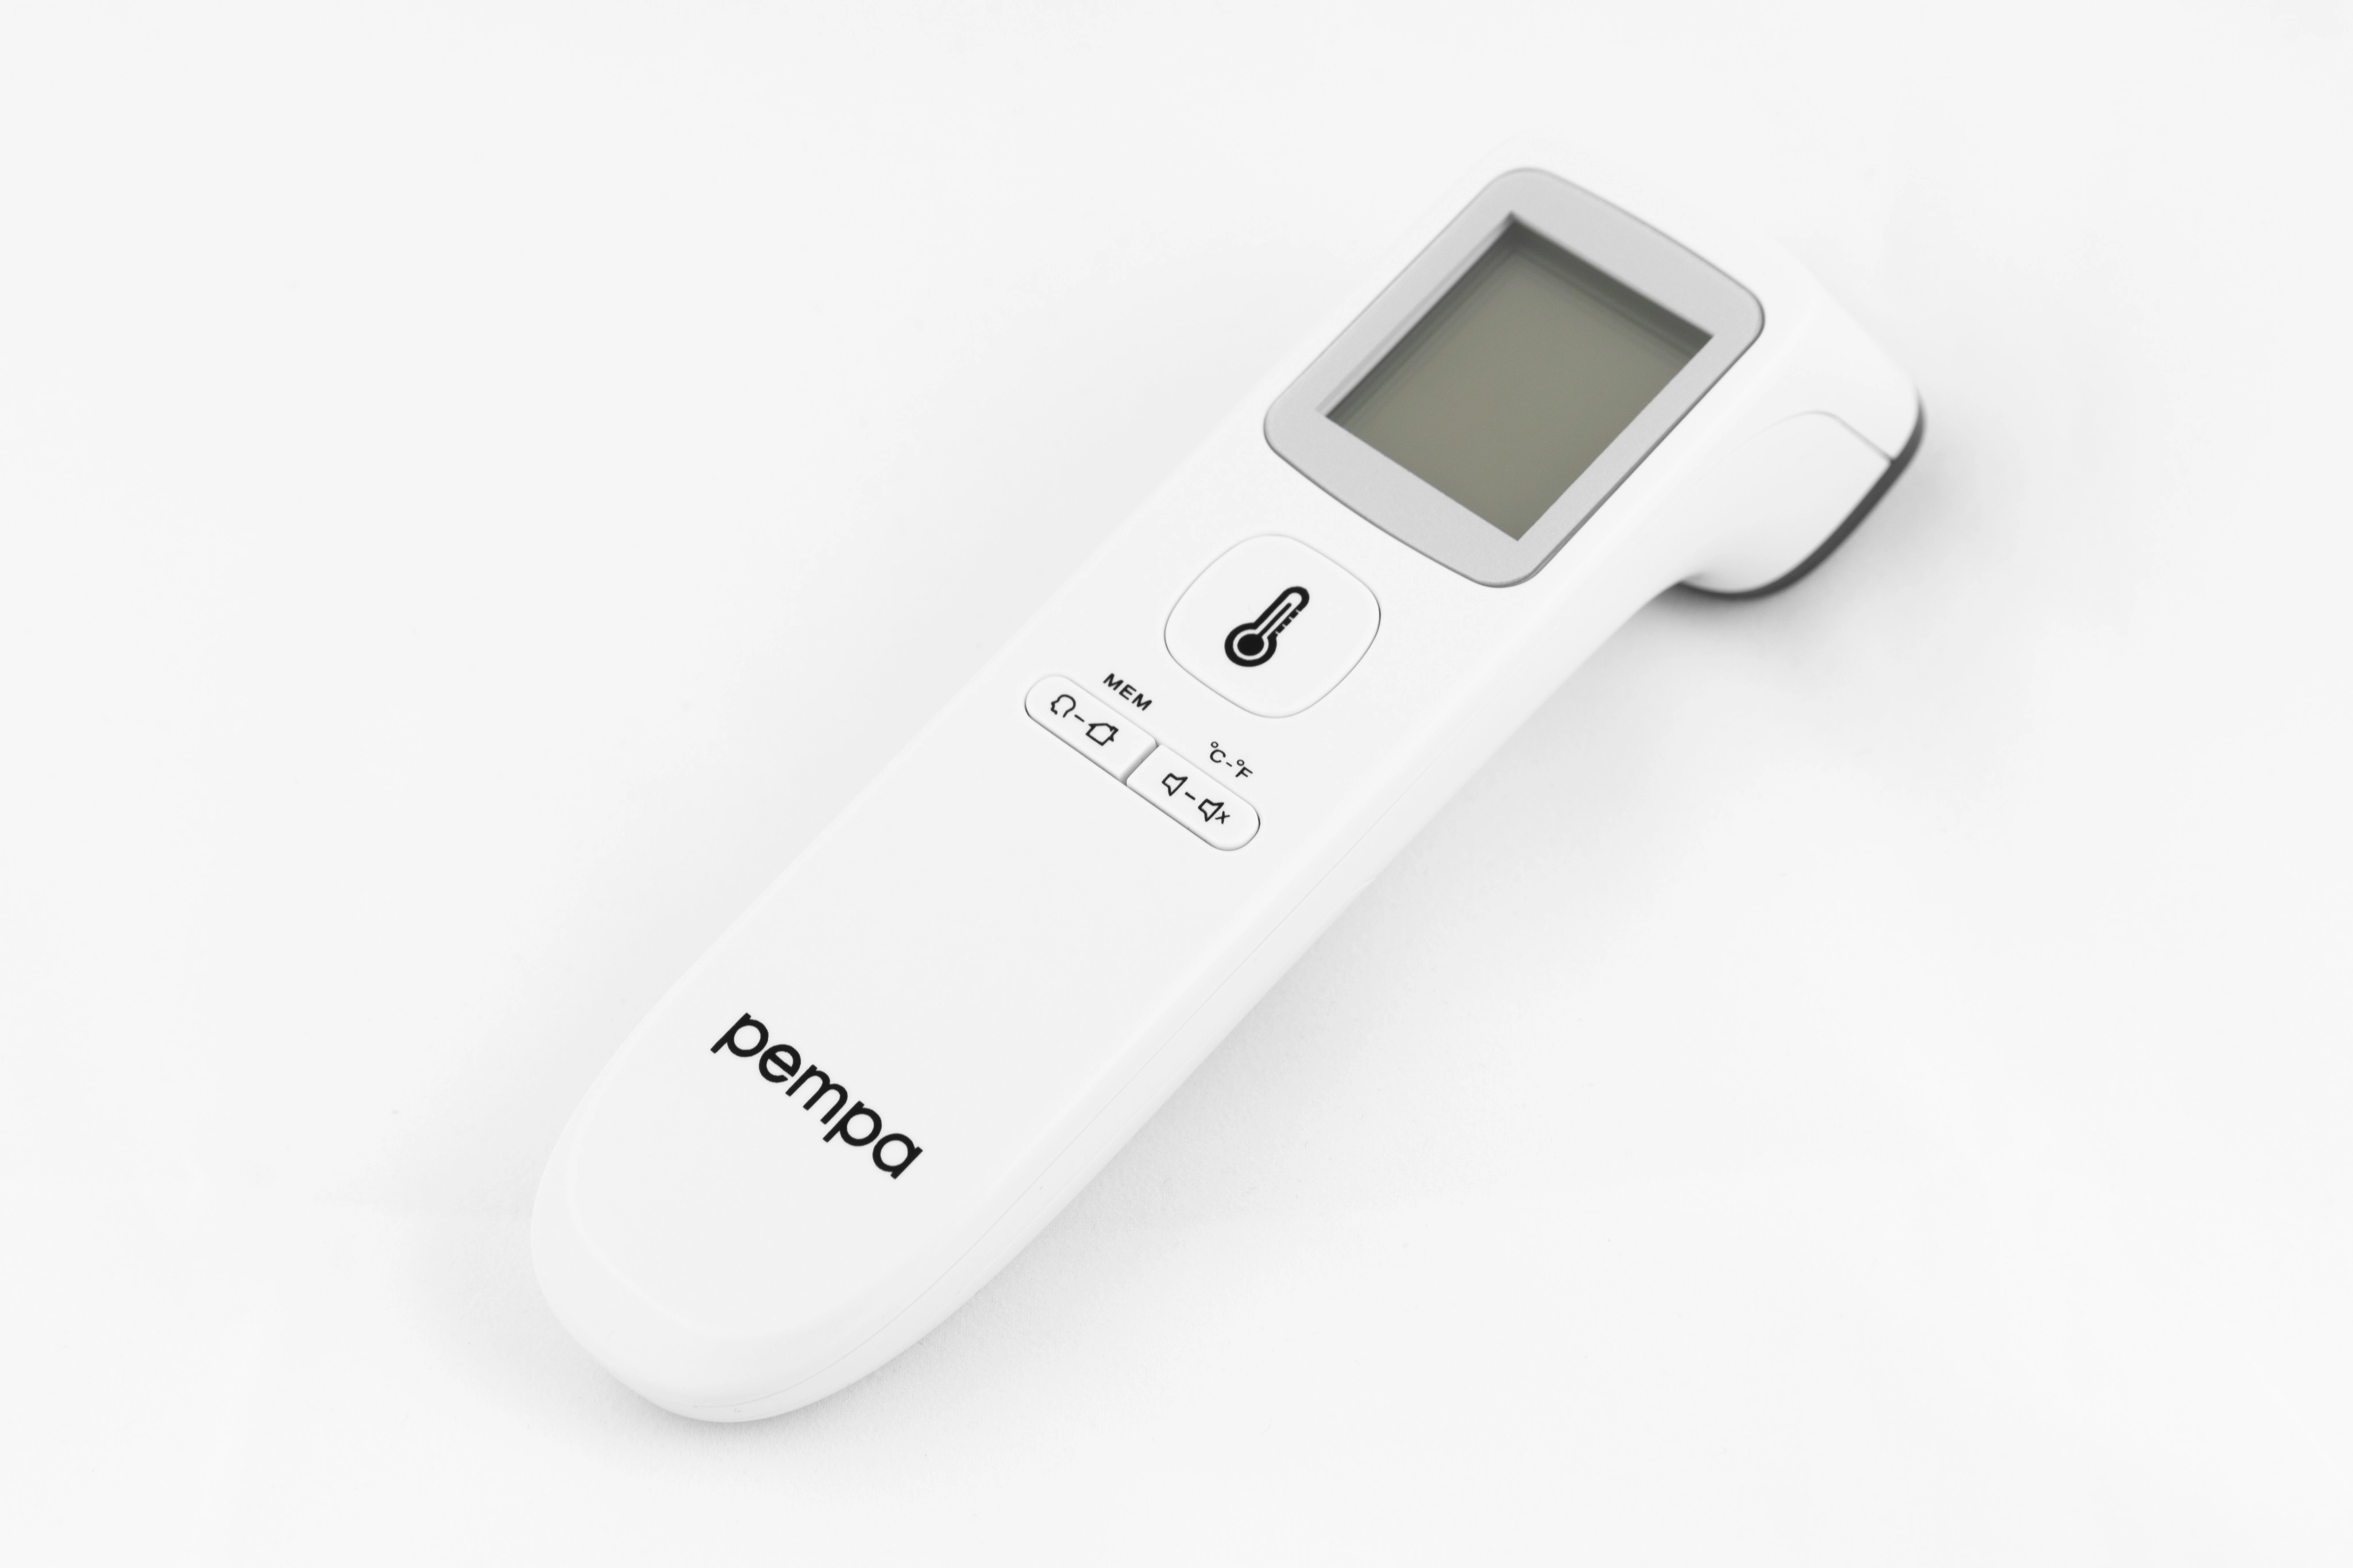 Pempa - Termometr bezdotykowy T200